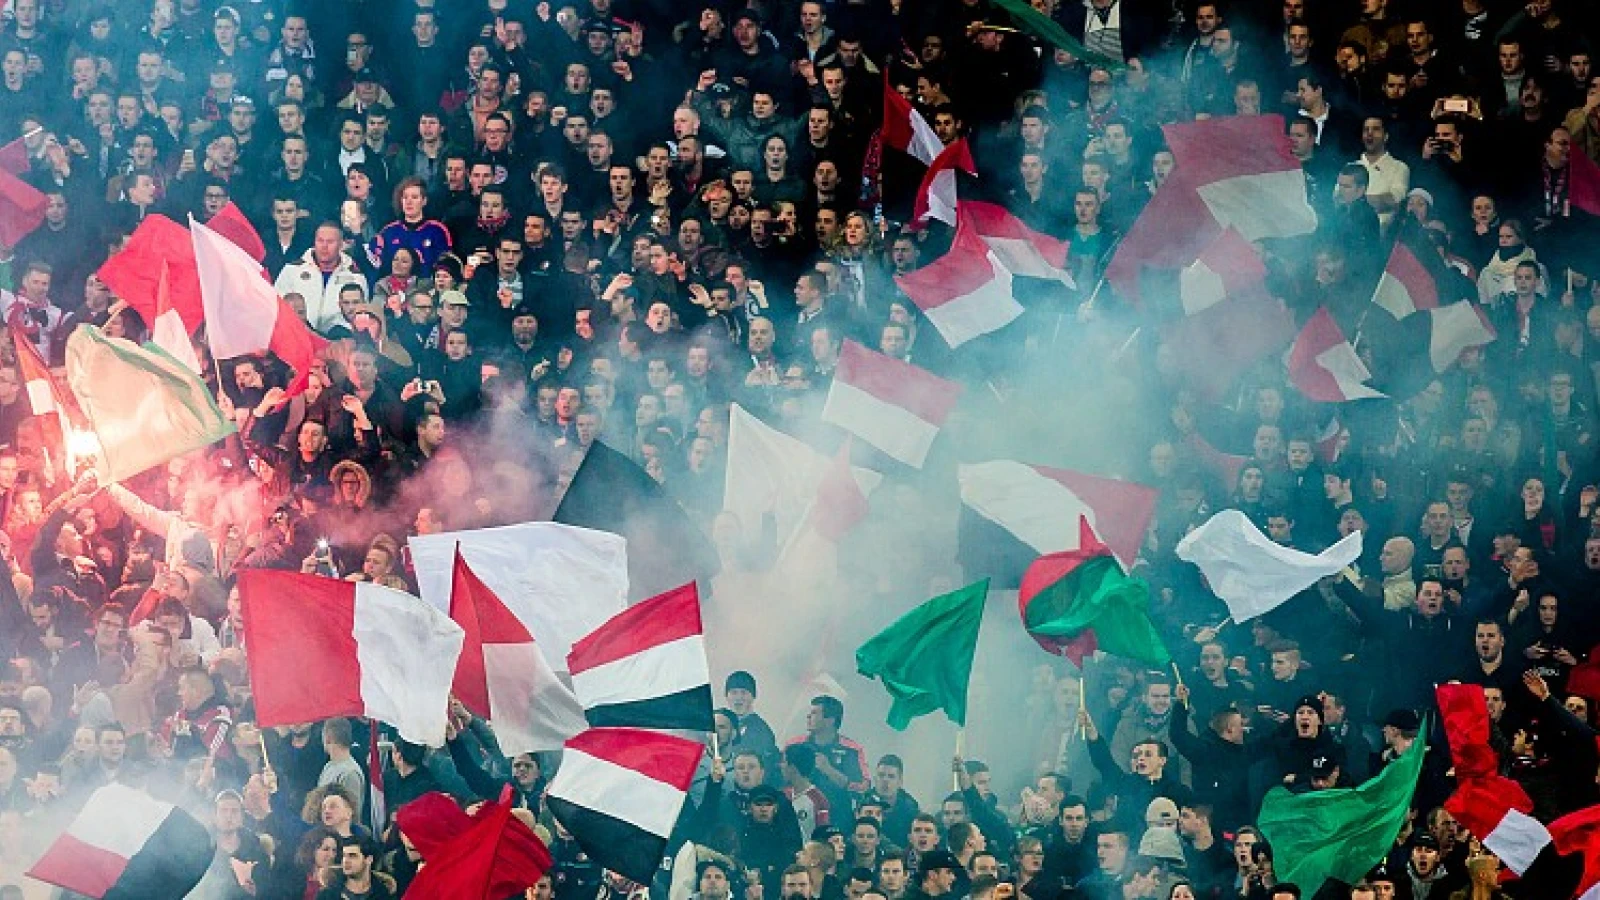 Sfeeractie voor aanvang Feyenoord - Manchester City afgeblazen